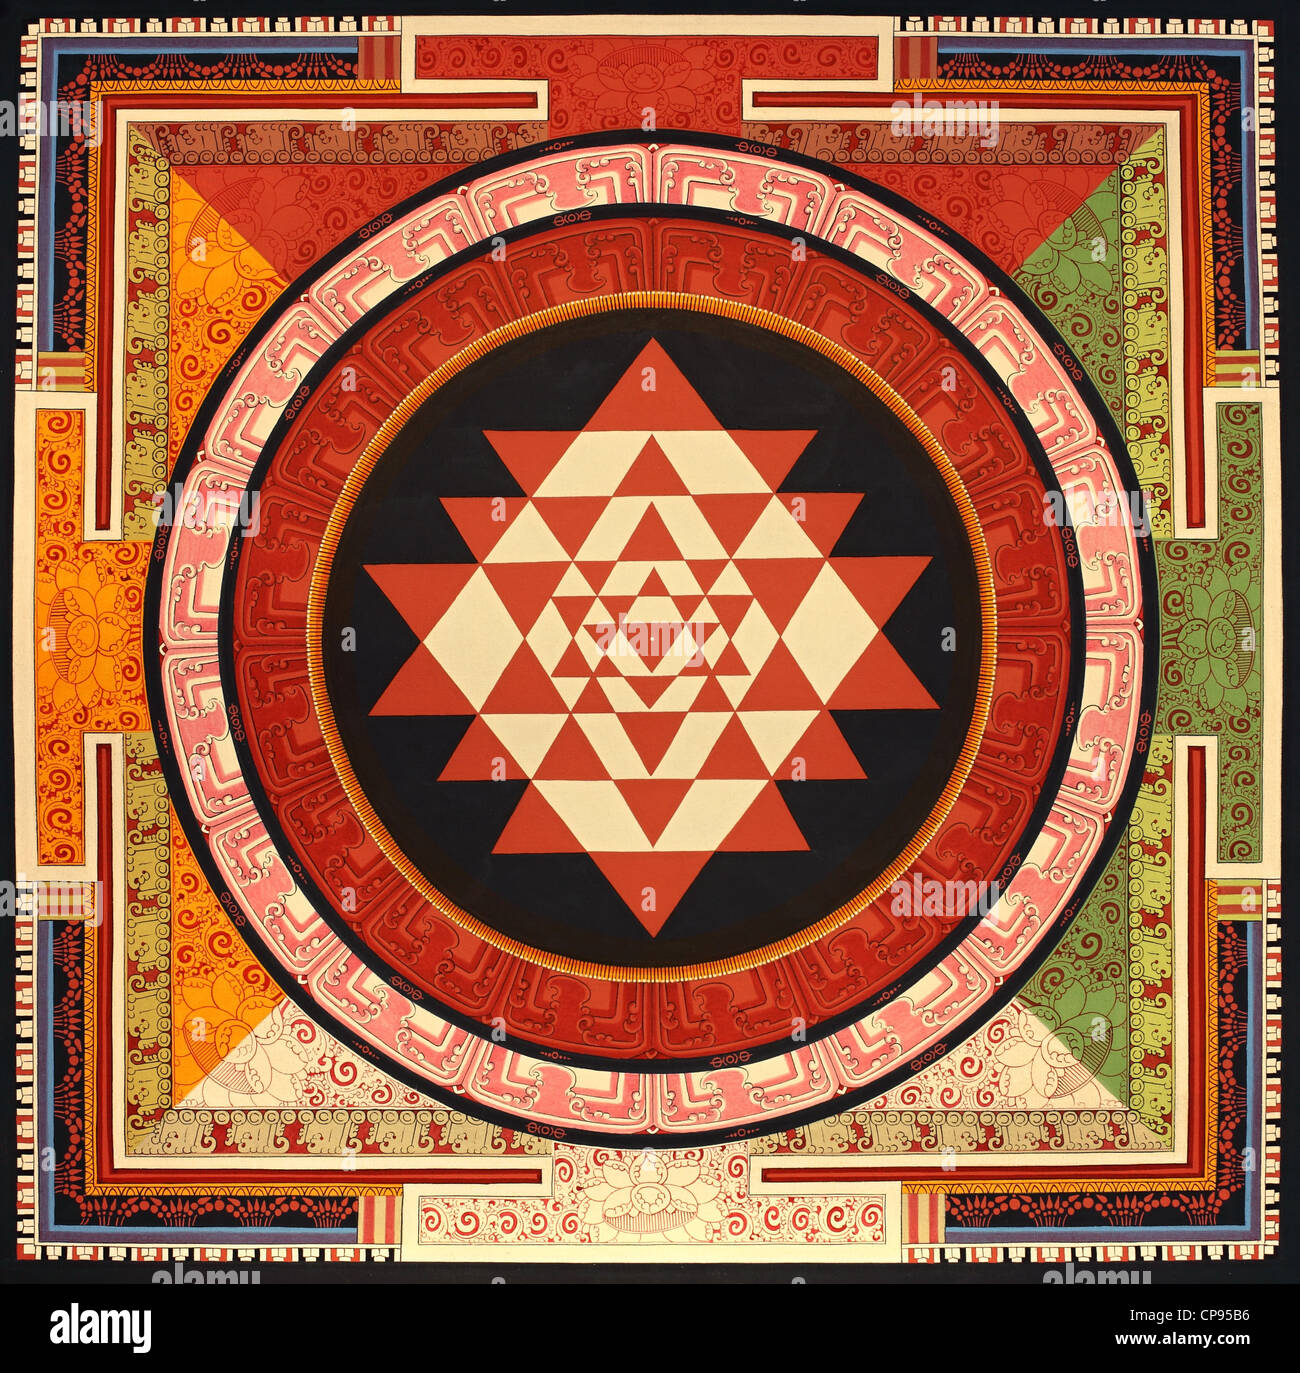 Mandala - Buddhist painting Thangka from Nepal Stock Photo - Alamy